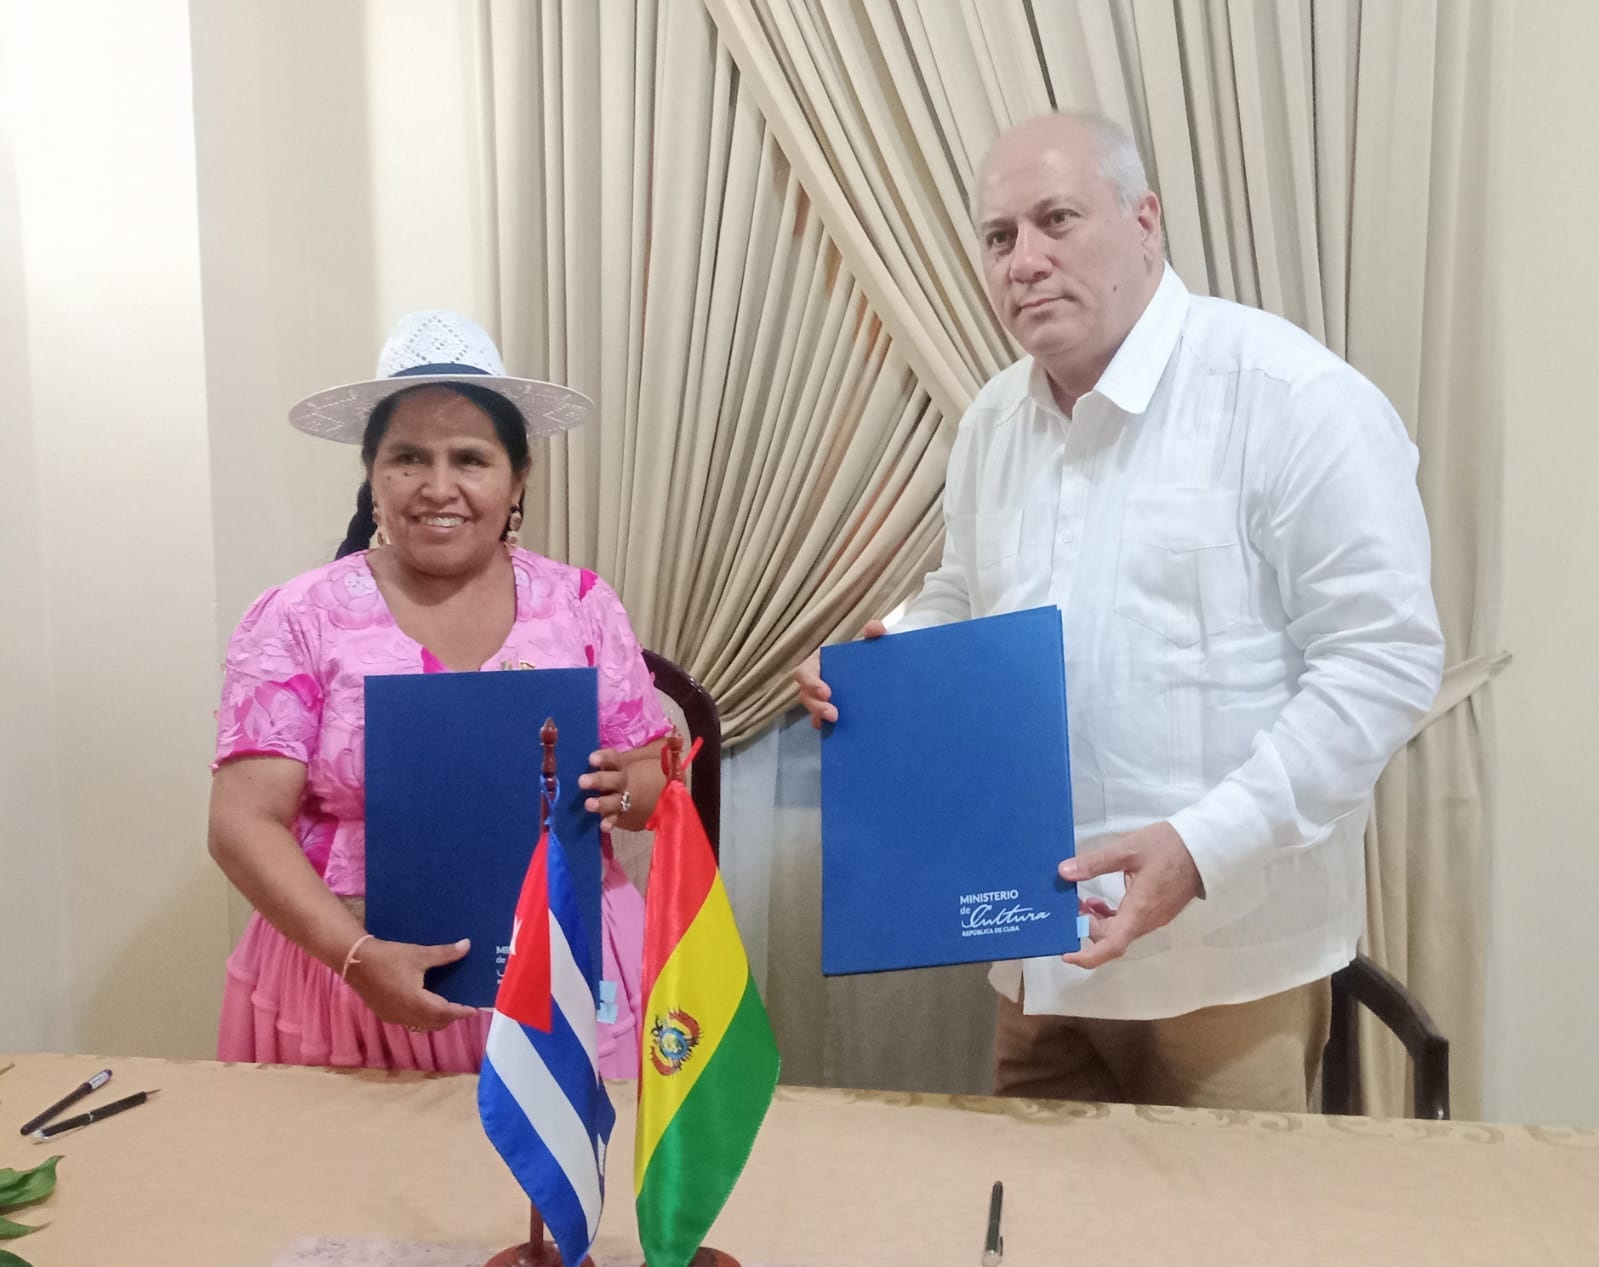 Suscribimos el Memorandum de Entendimiento sobre Cooperación Cultural y Artística entre Cuba y Bolivia